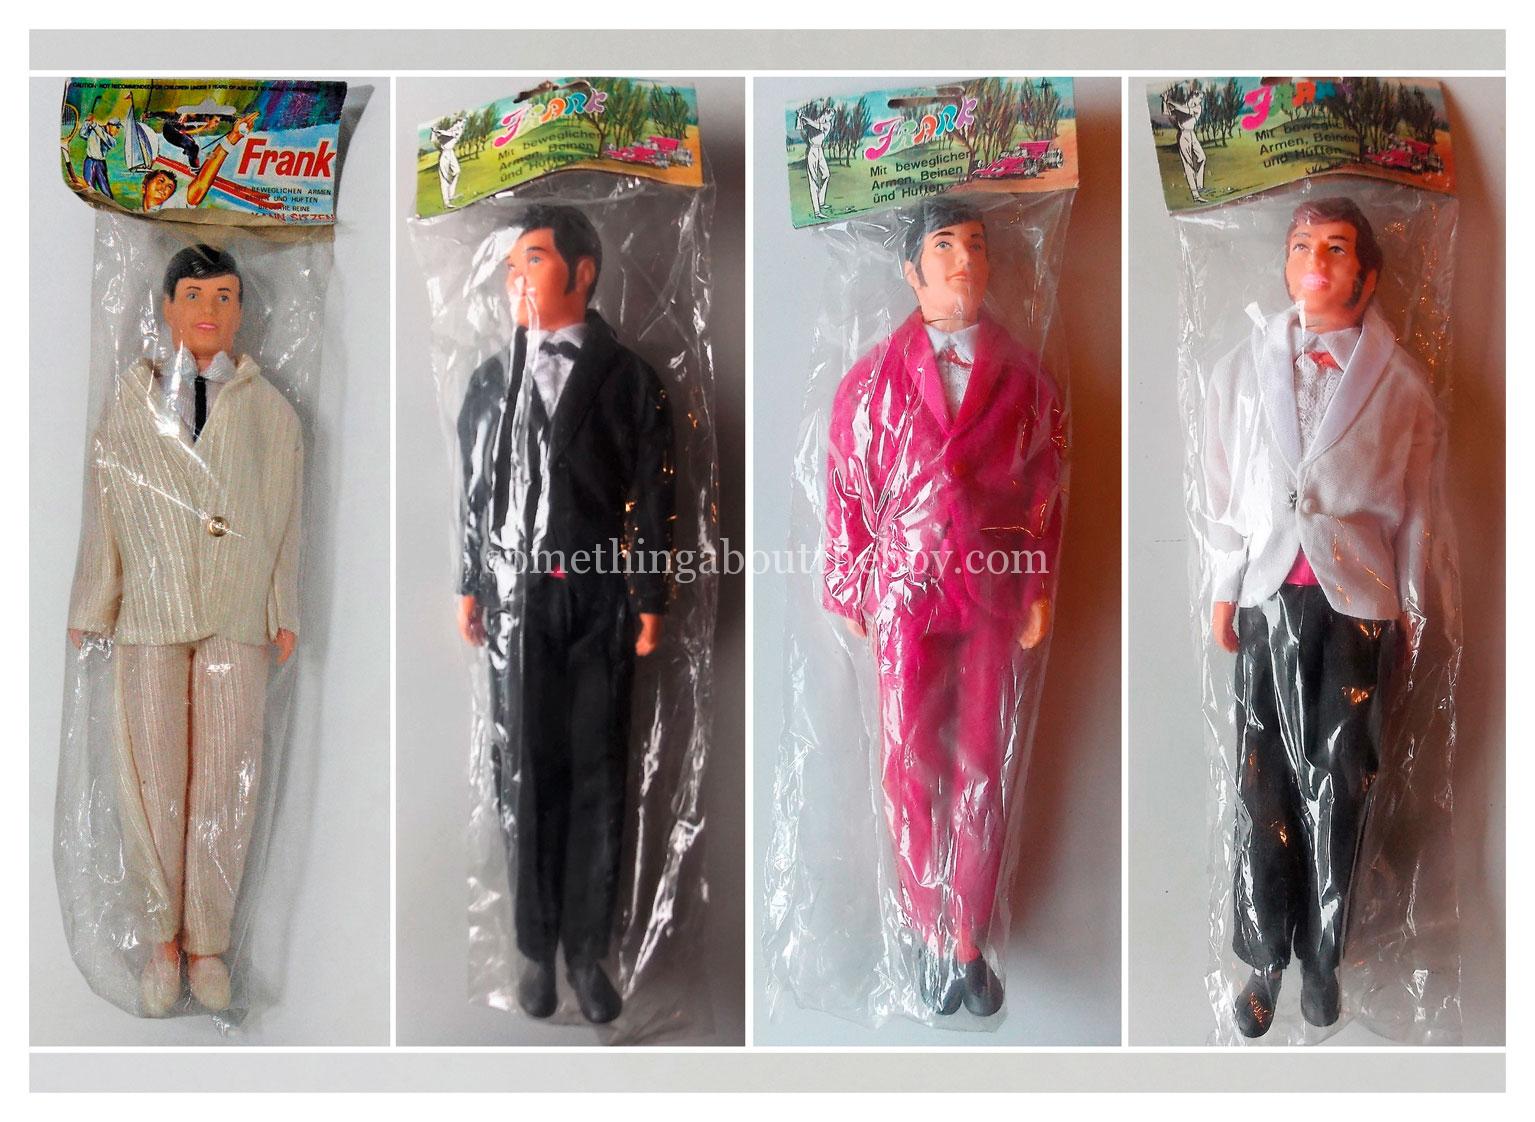 German-market Frank dolls (fully-dressed) in original packaging